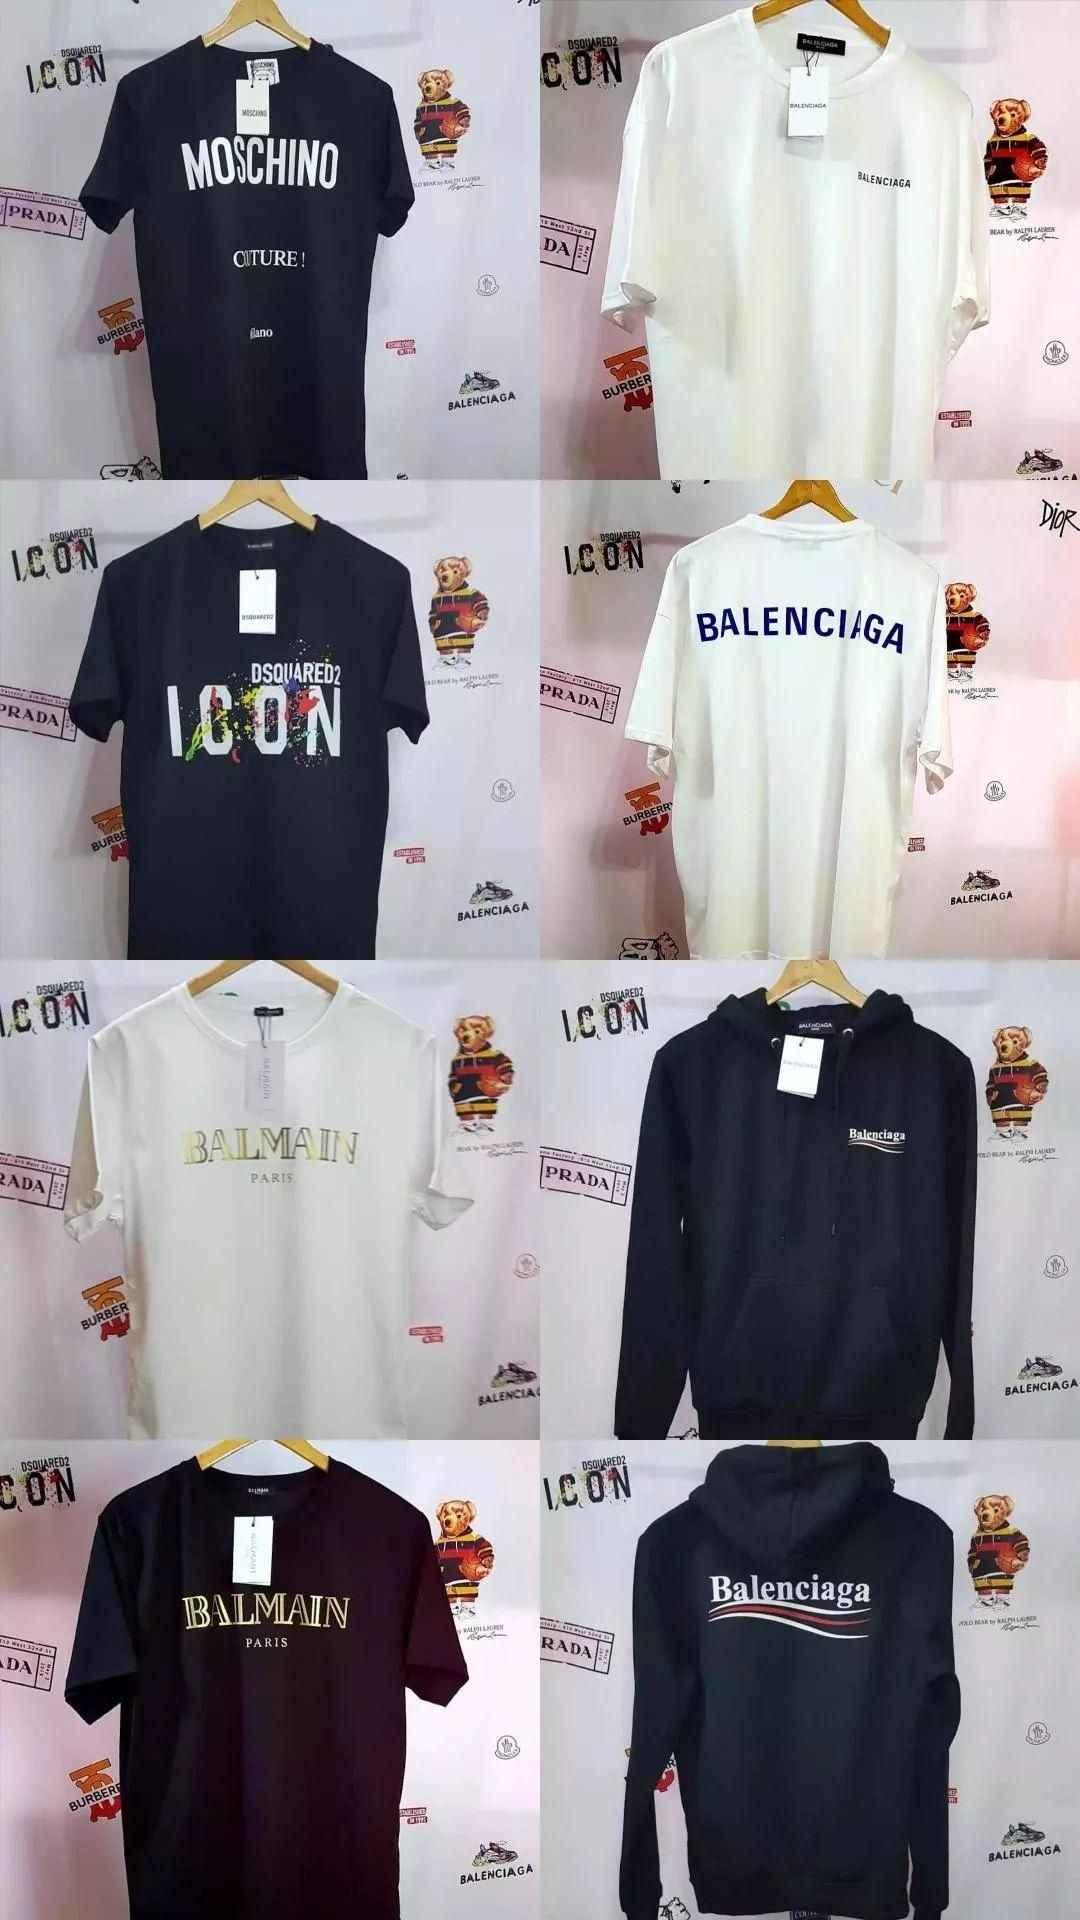 Off white / Balenciaga / Balmain / Palm angels - T-shirt